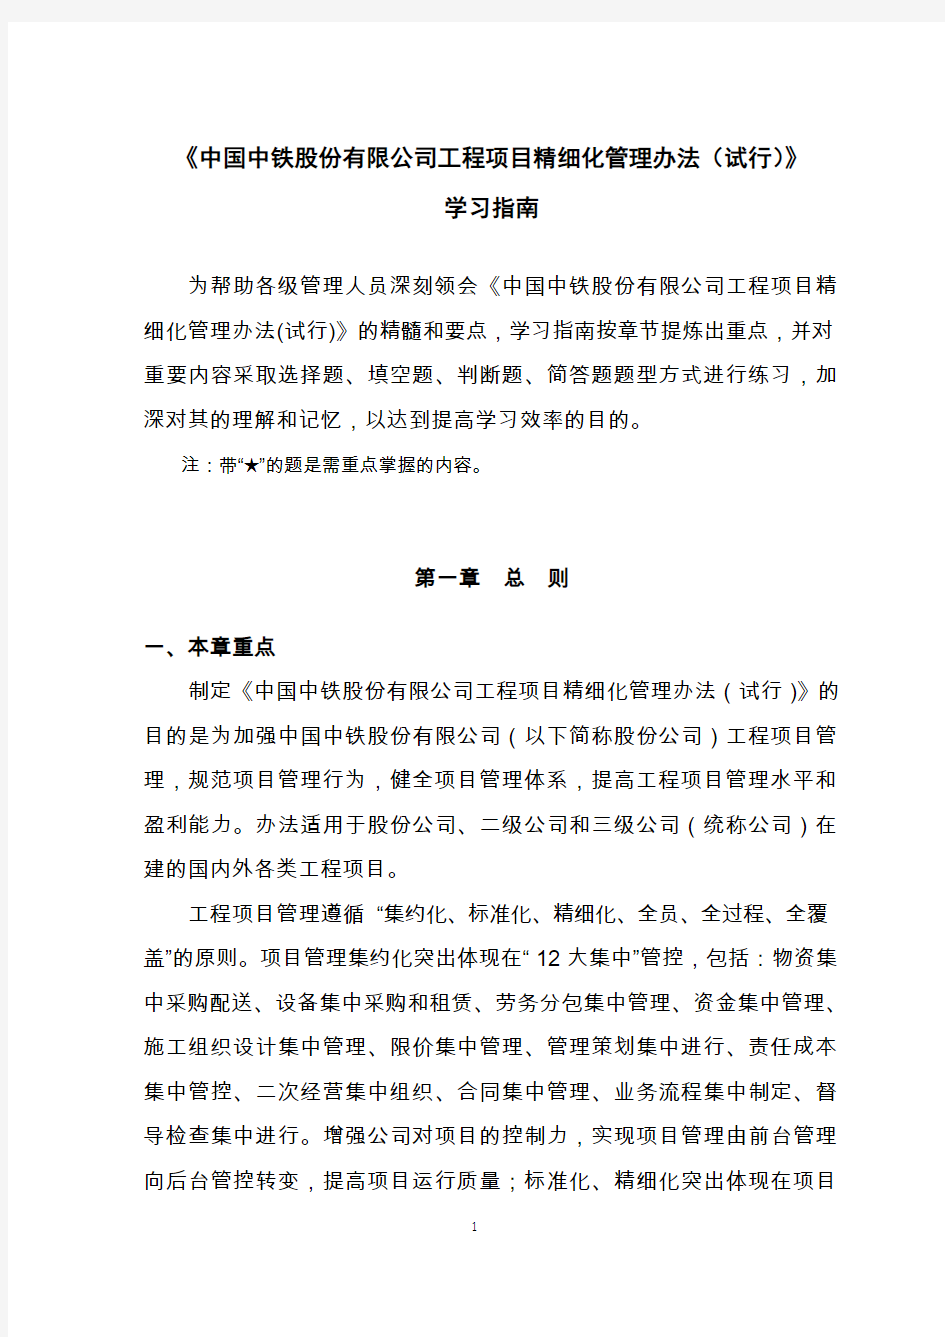 《中国中铁股份有限公司工程项目精细化管理办法(试行)》学习指南(发布稿)